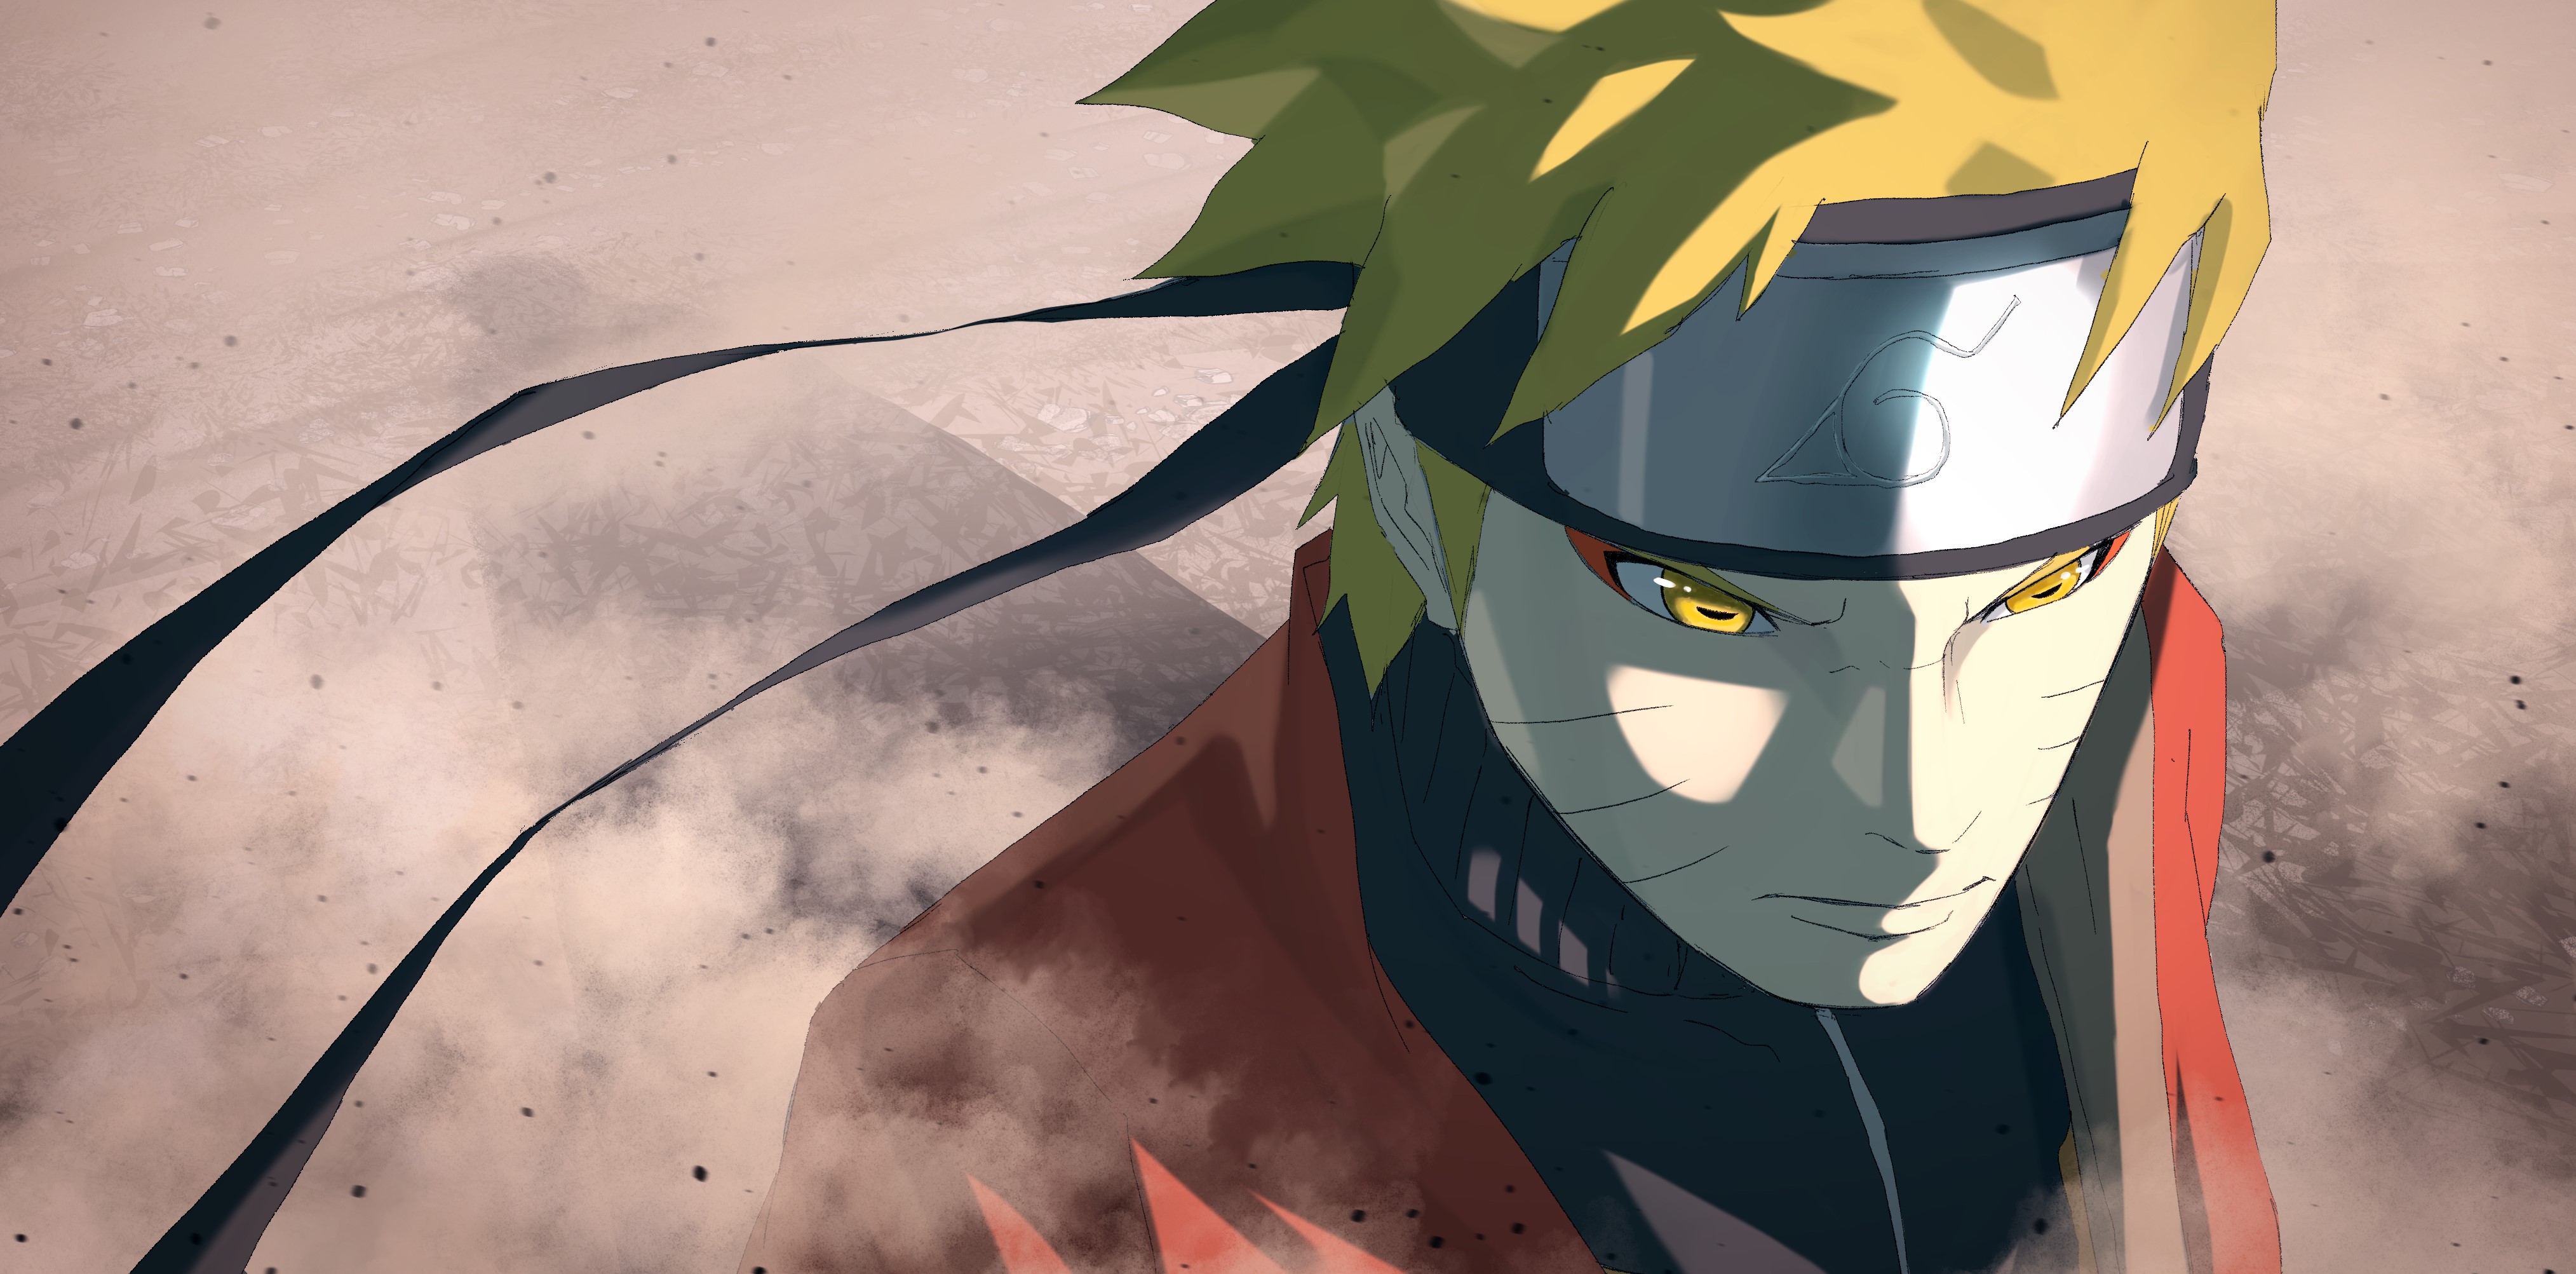 Bức ảnh hình nền HD Naruto sẽ mang đến cho bạn một trải nghiệm tuyệt vời với độ phân giải cao, màu sắc tươi sáng và chi tiết rõ nét.